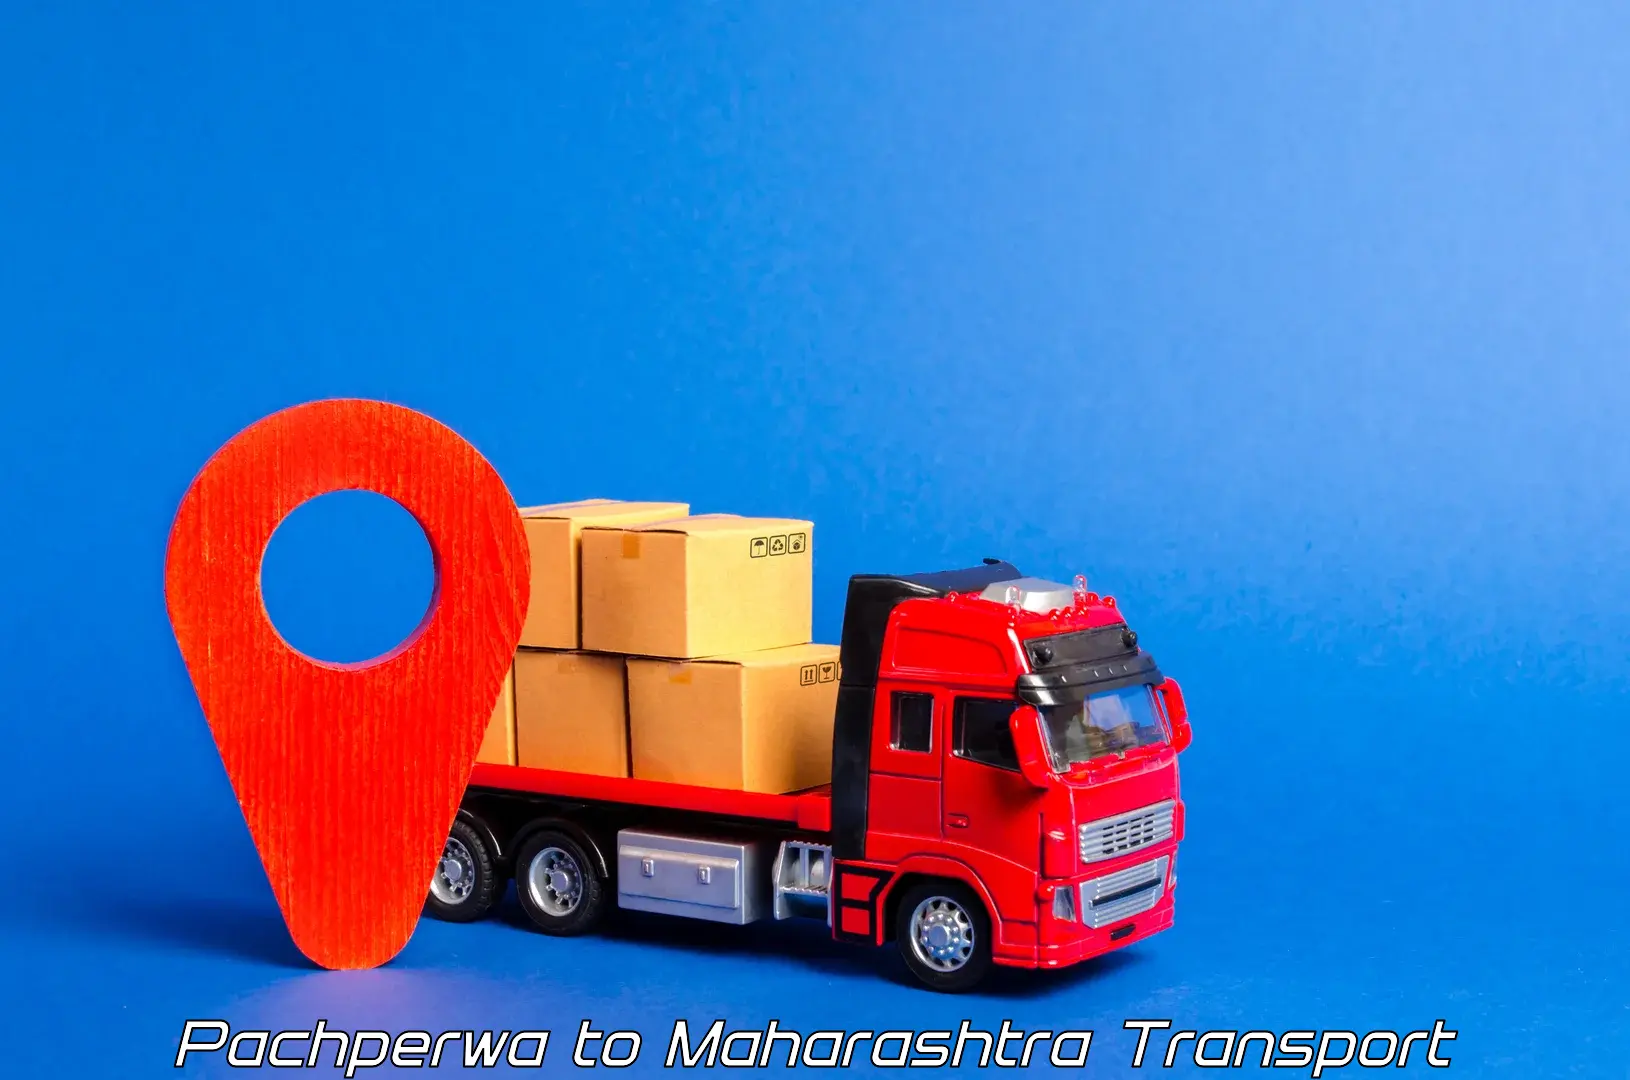 Nearby transport service Pachperwa to Raigarh Maharashtra